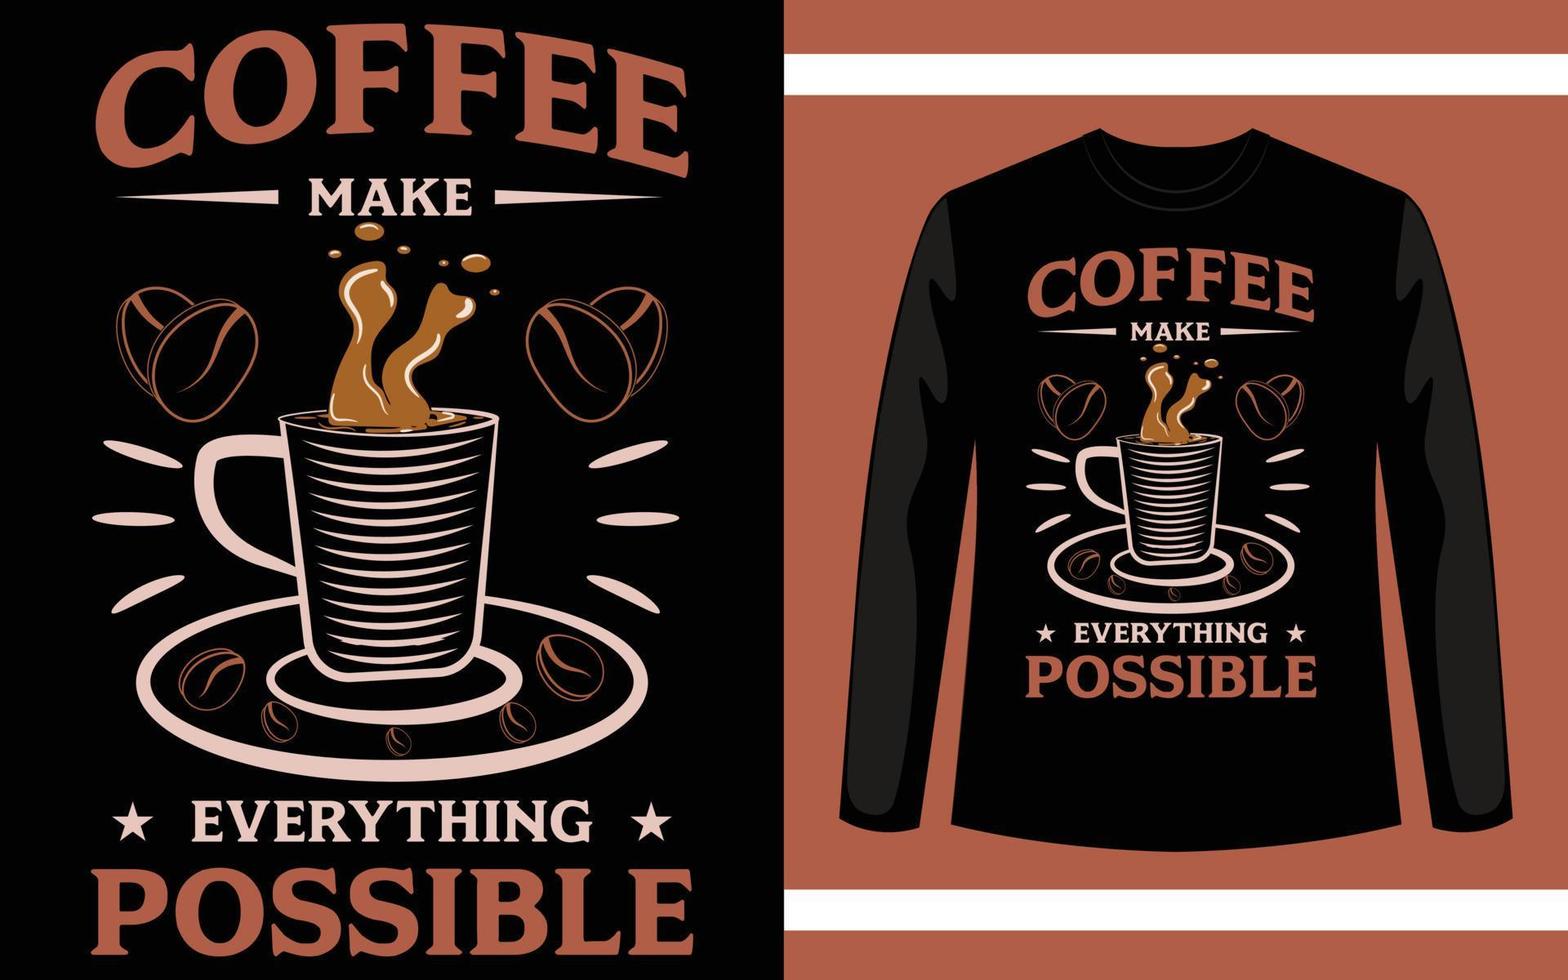 kaffe gör allt möjligt vektor t-shirt designmall